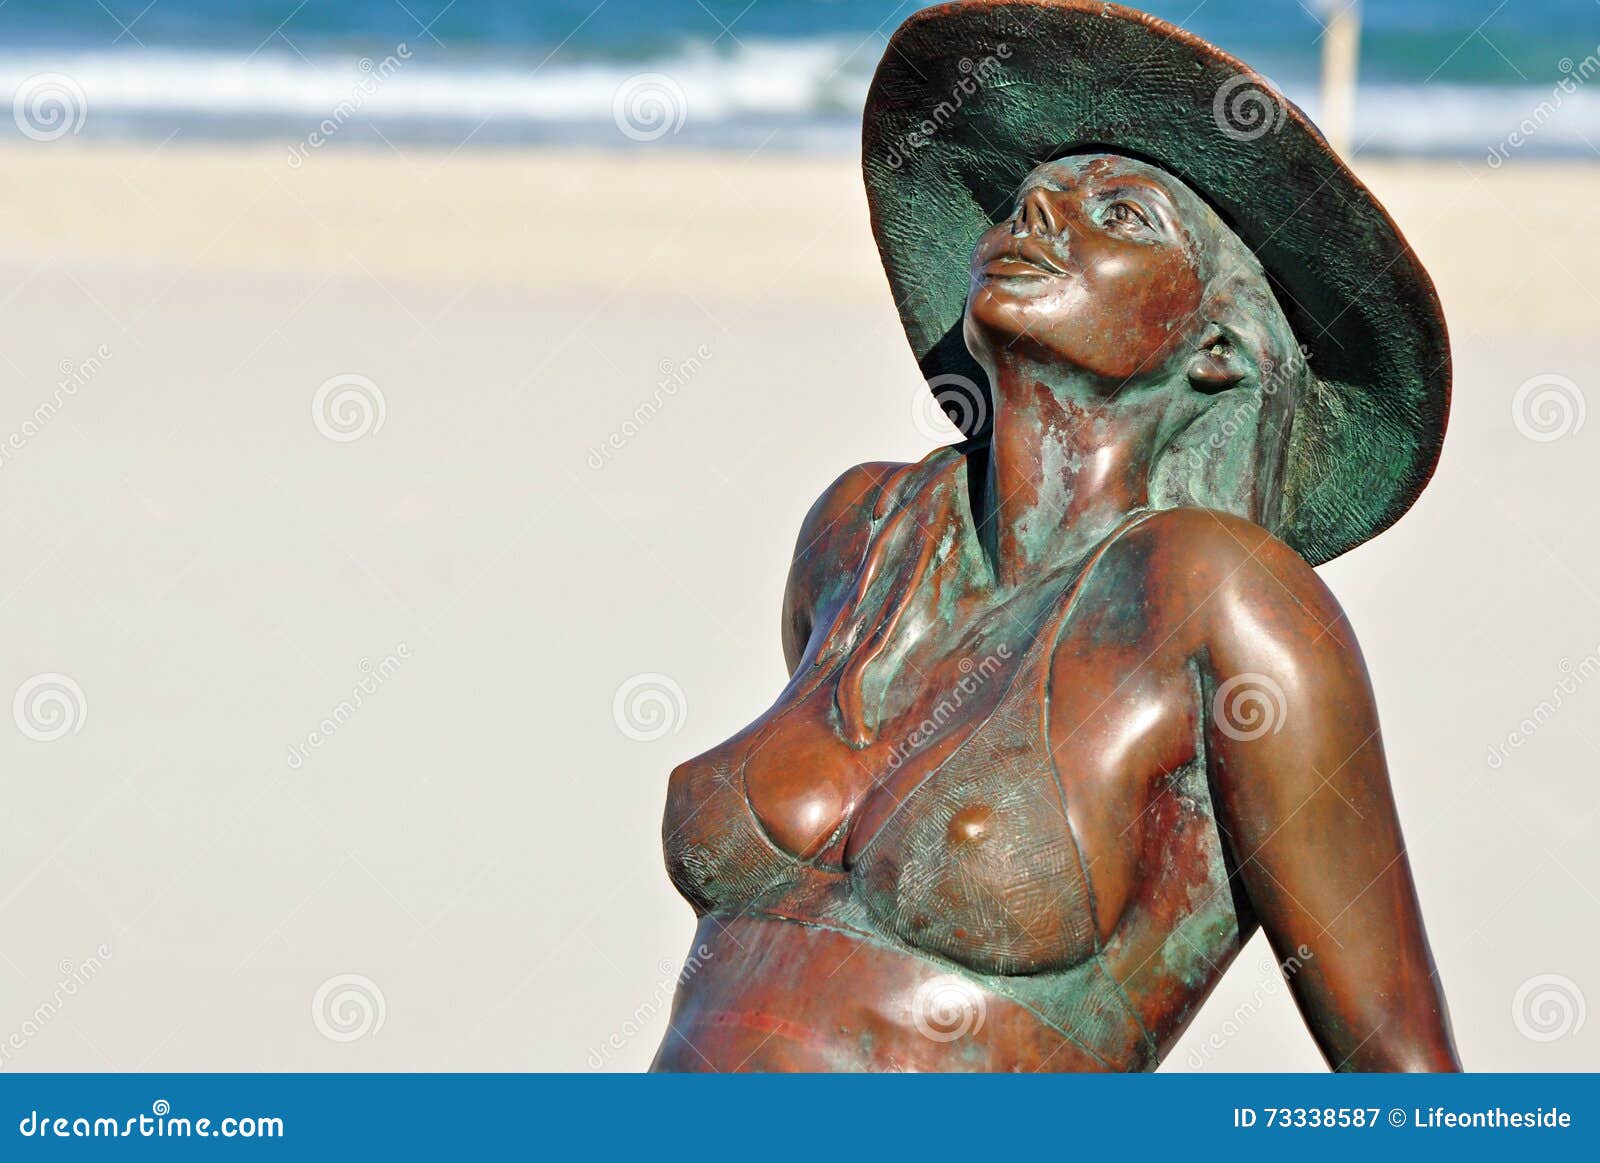 nude girlfriend on the beach Porn Photos